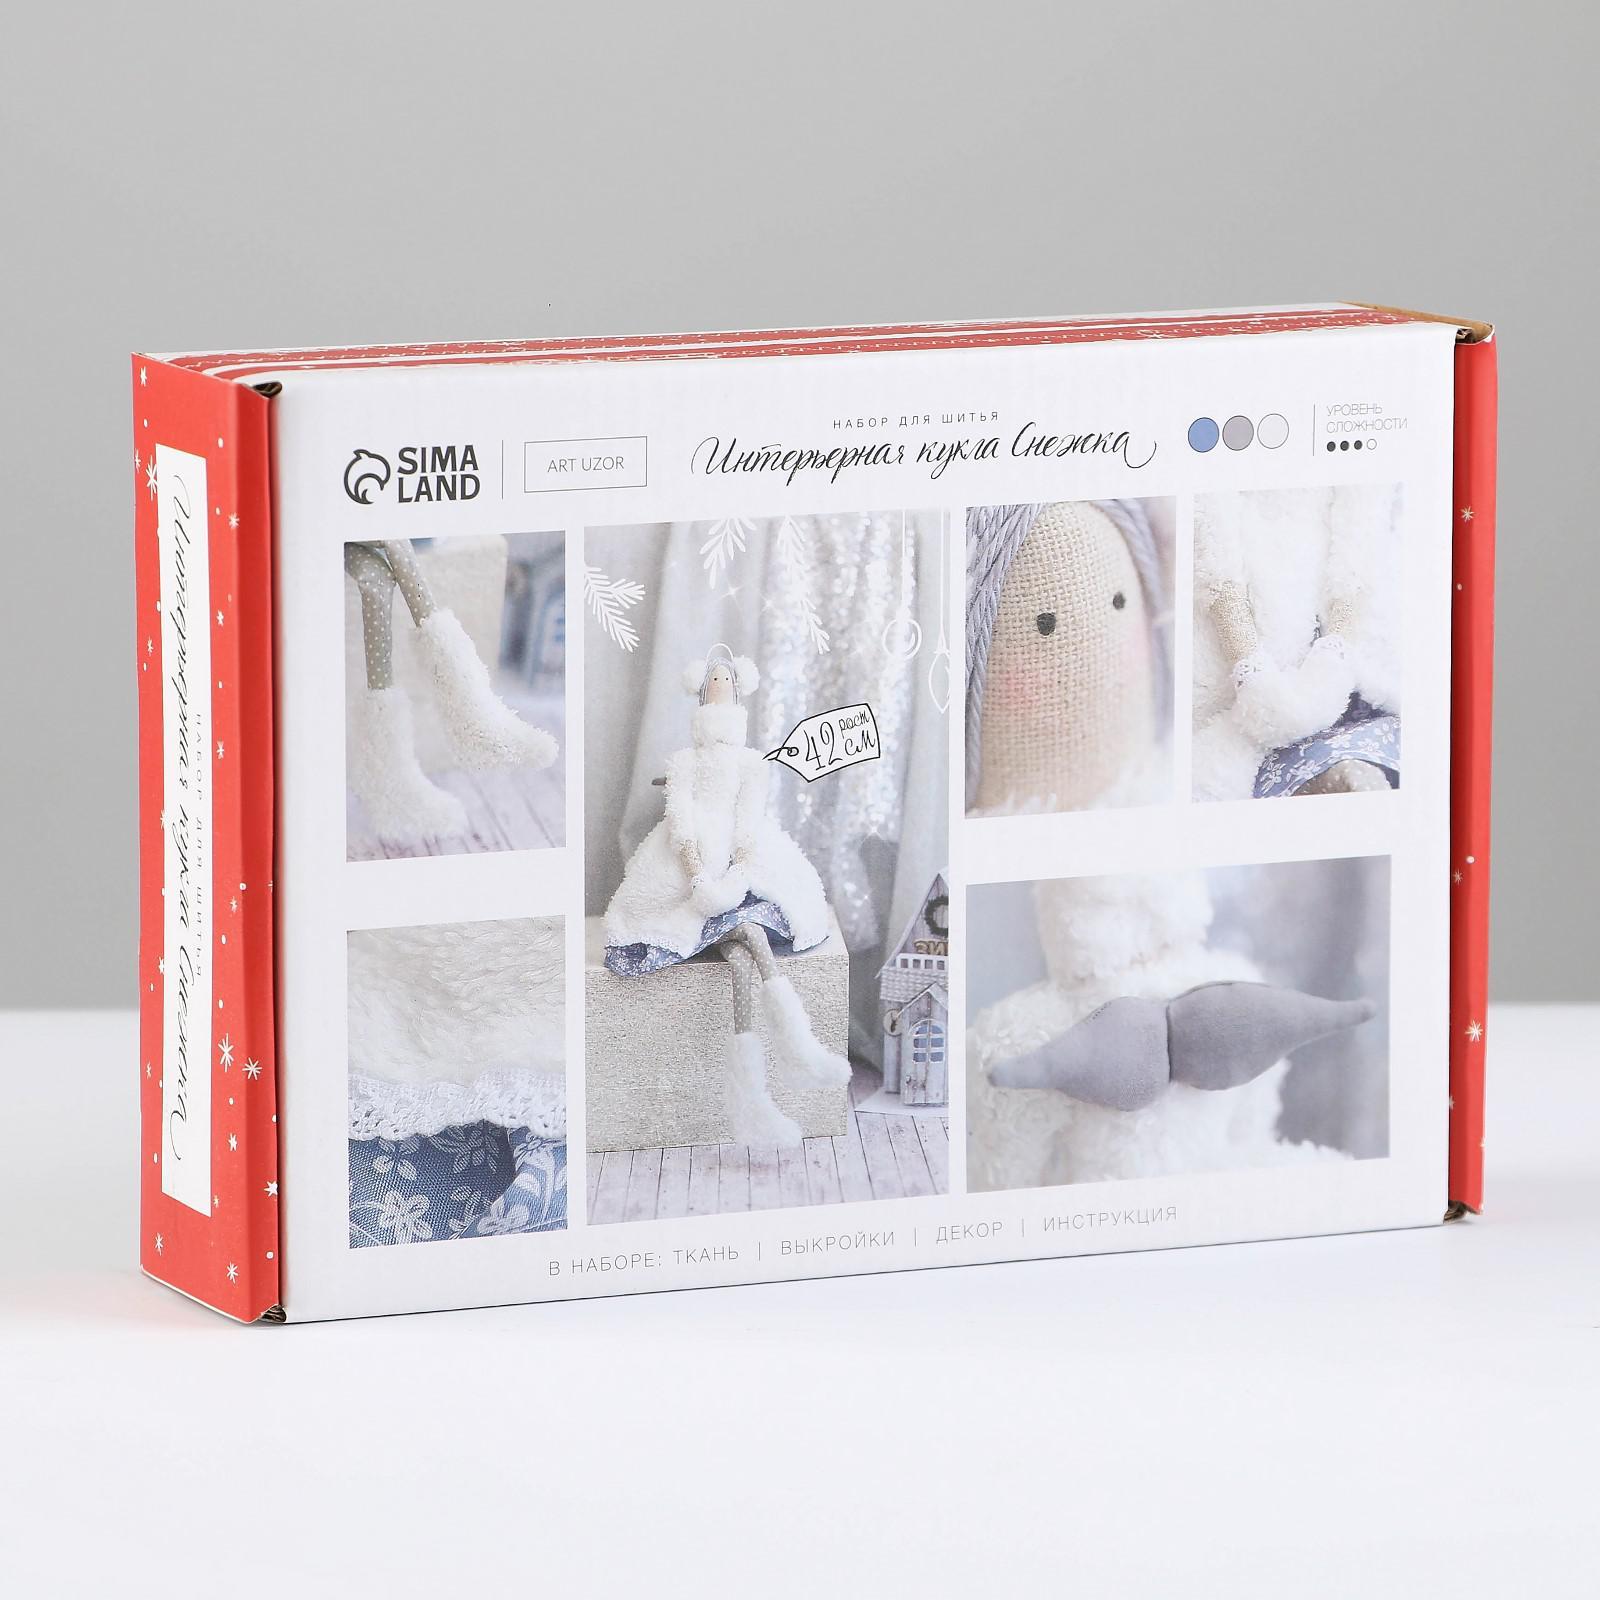 Текстильная кукла: выкройки, материалы, фото текстильных кукол